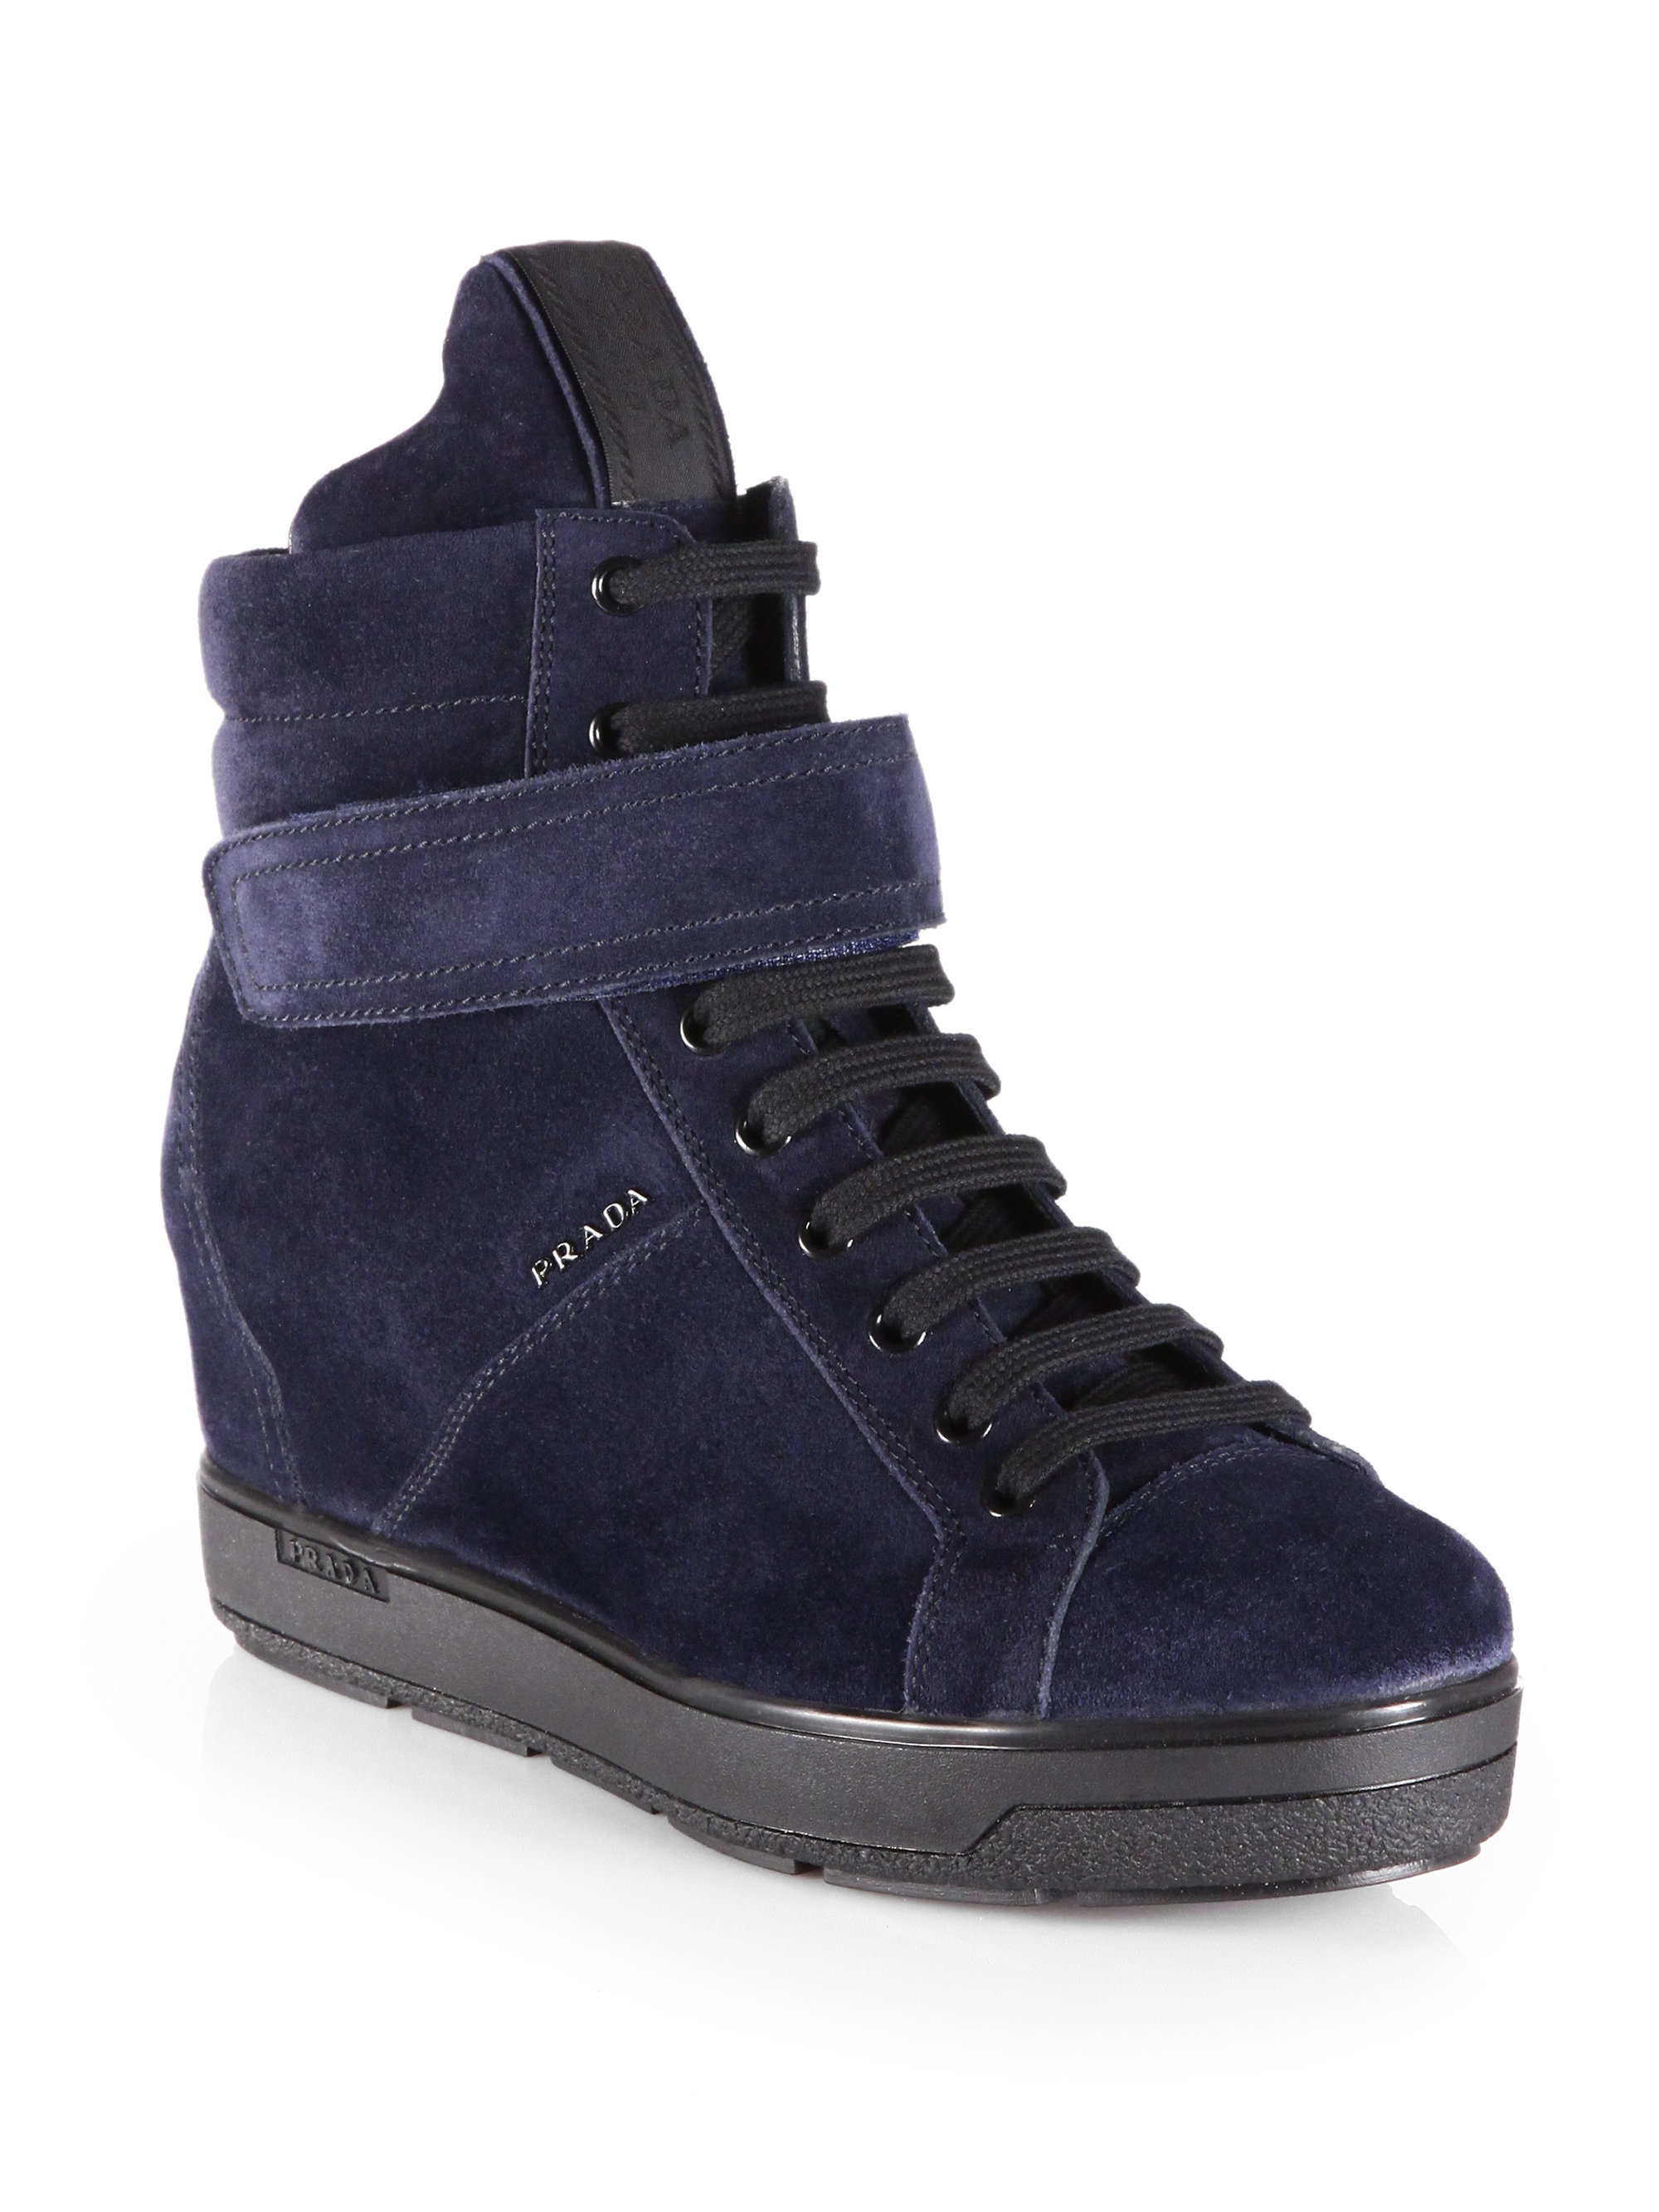 Lyst - Prada Suede Laceup Wedge Sneakers in Blue